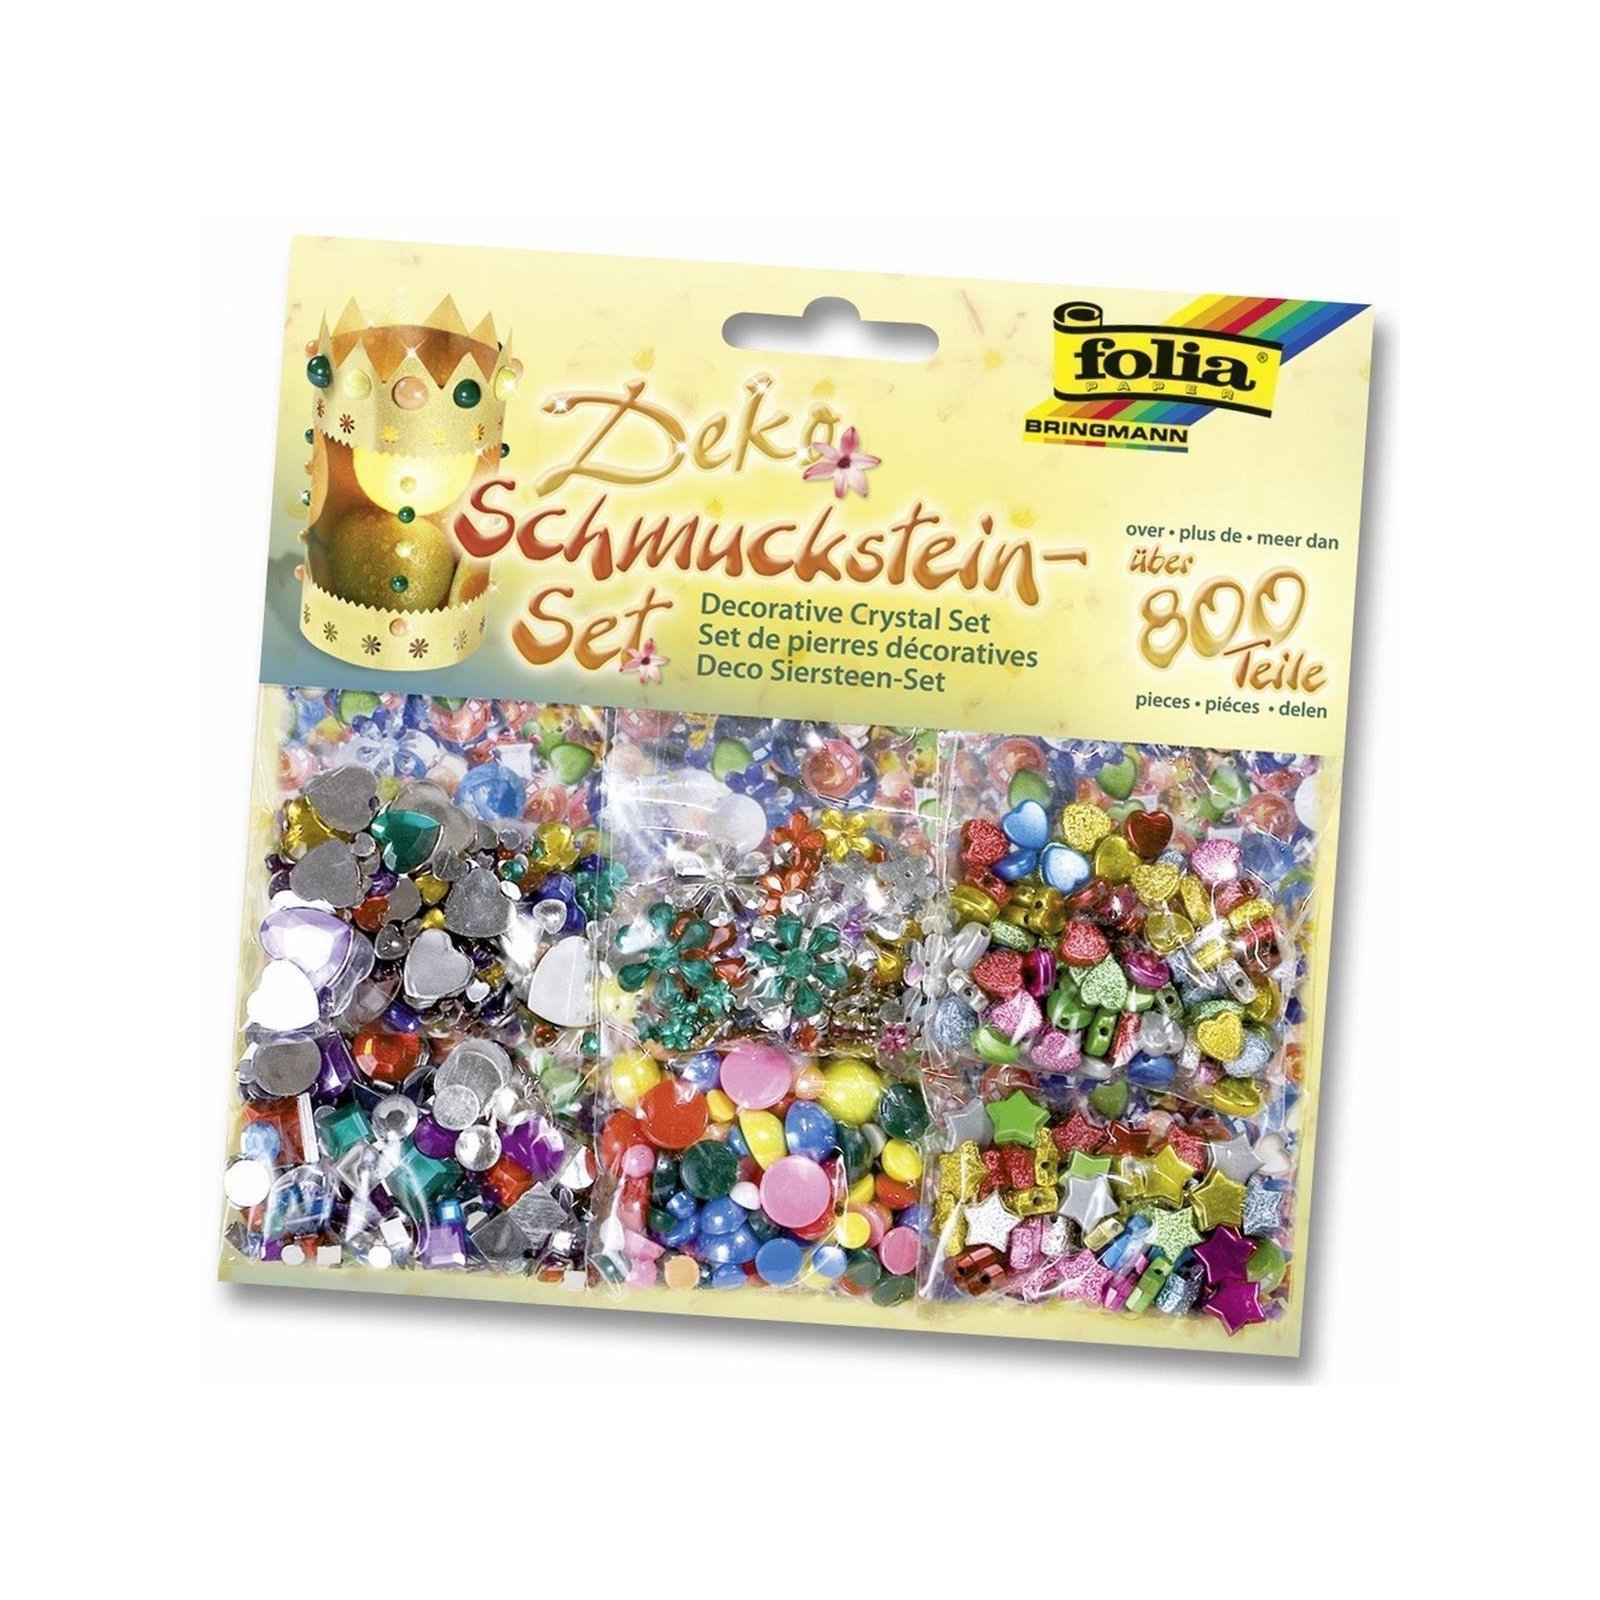 mehrfarbig 800-teil verschiedene Farben & Formen Folia Deko Schmucksteine-Set 